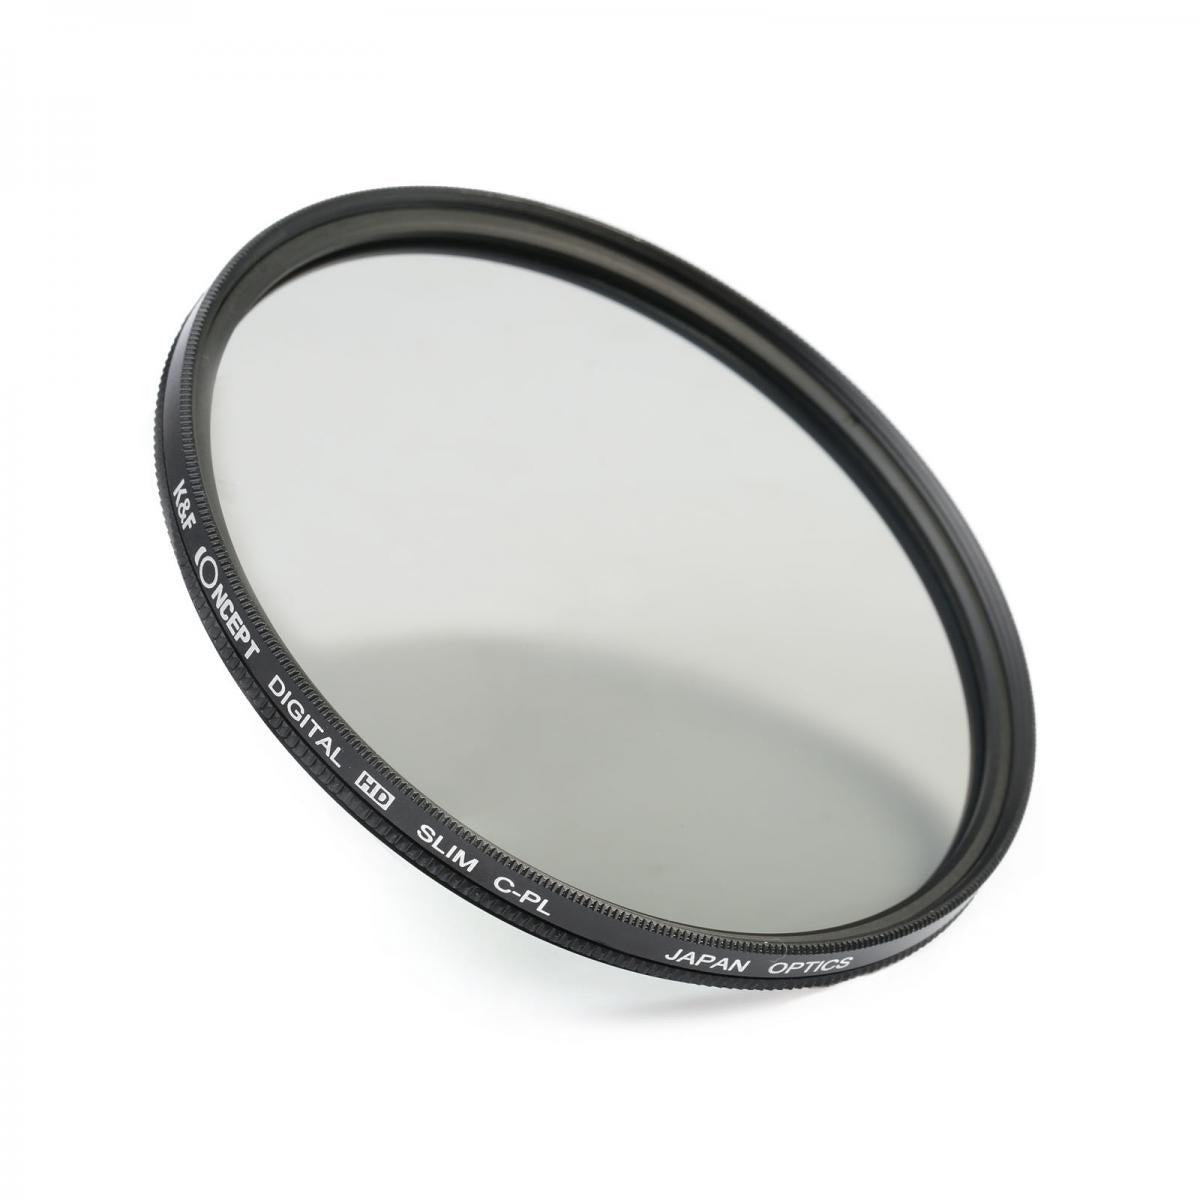 K&F Concept 82mm circular polarising filter CPL polarisation filter